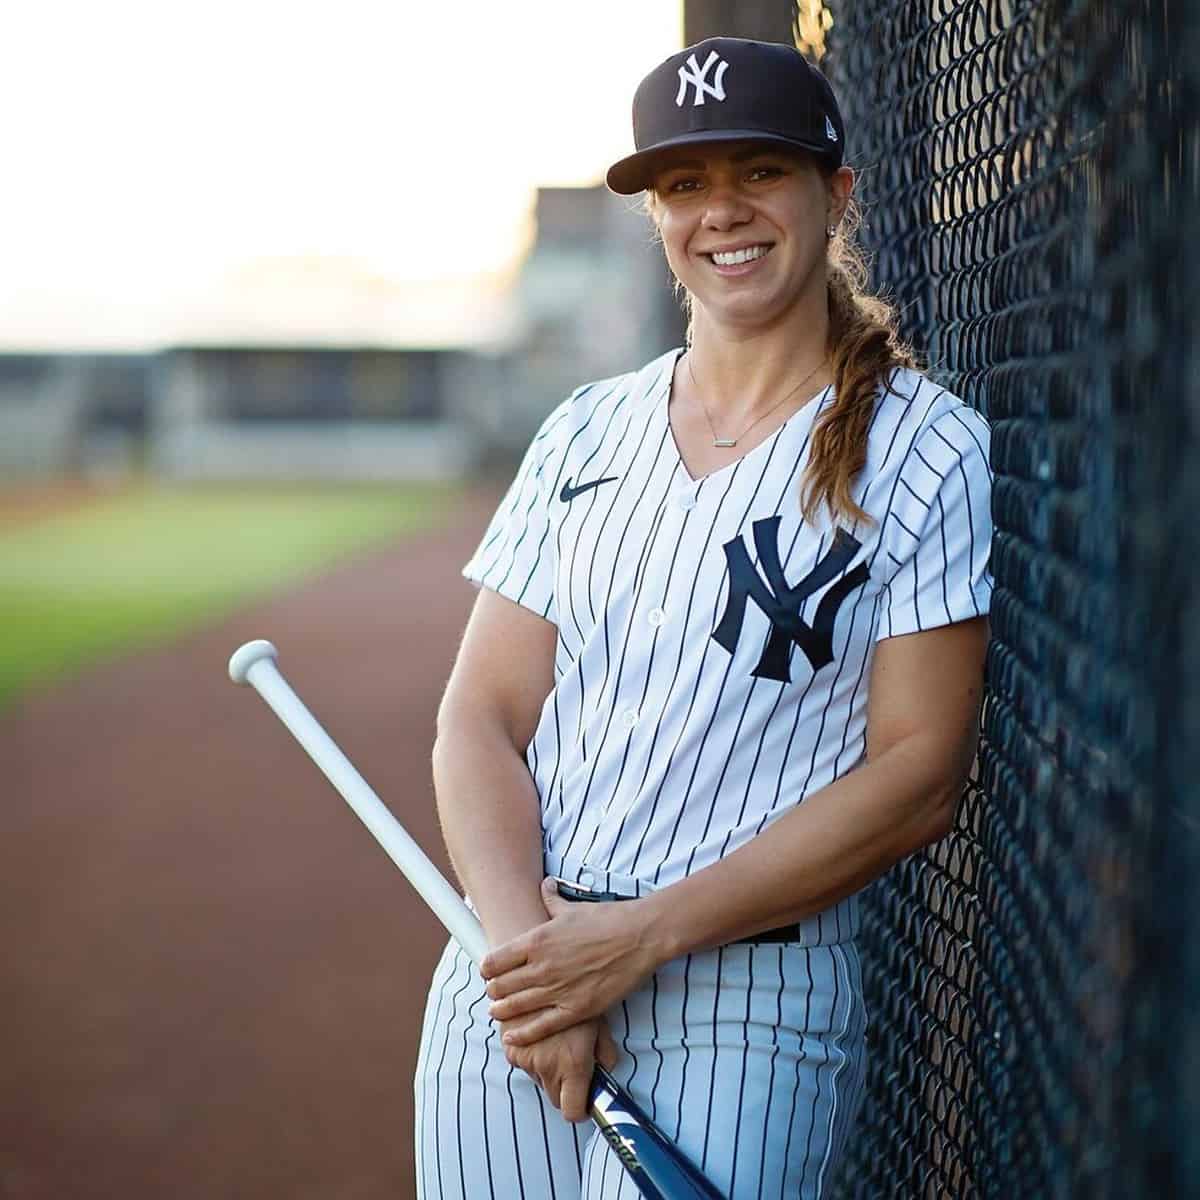 Rachel Balkovec becomes first female Minor League Baseball team